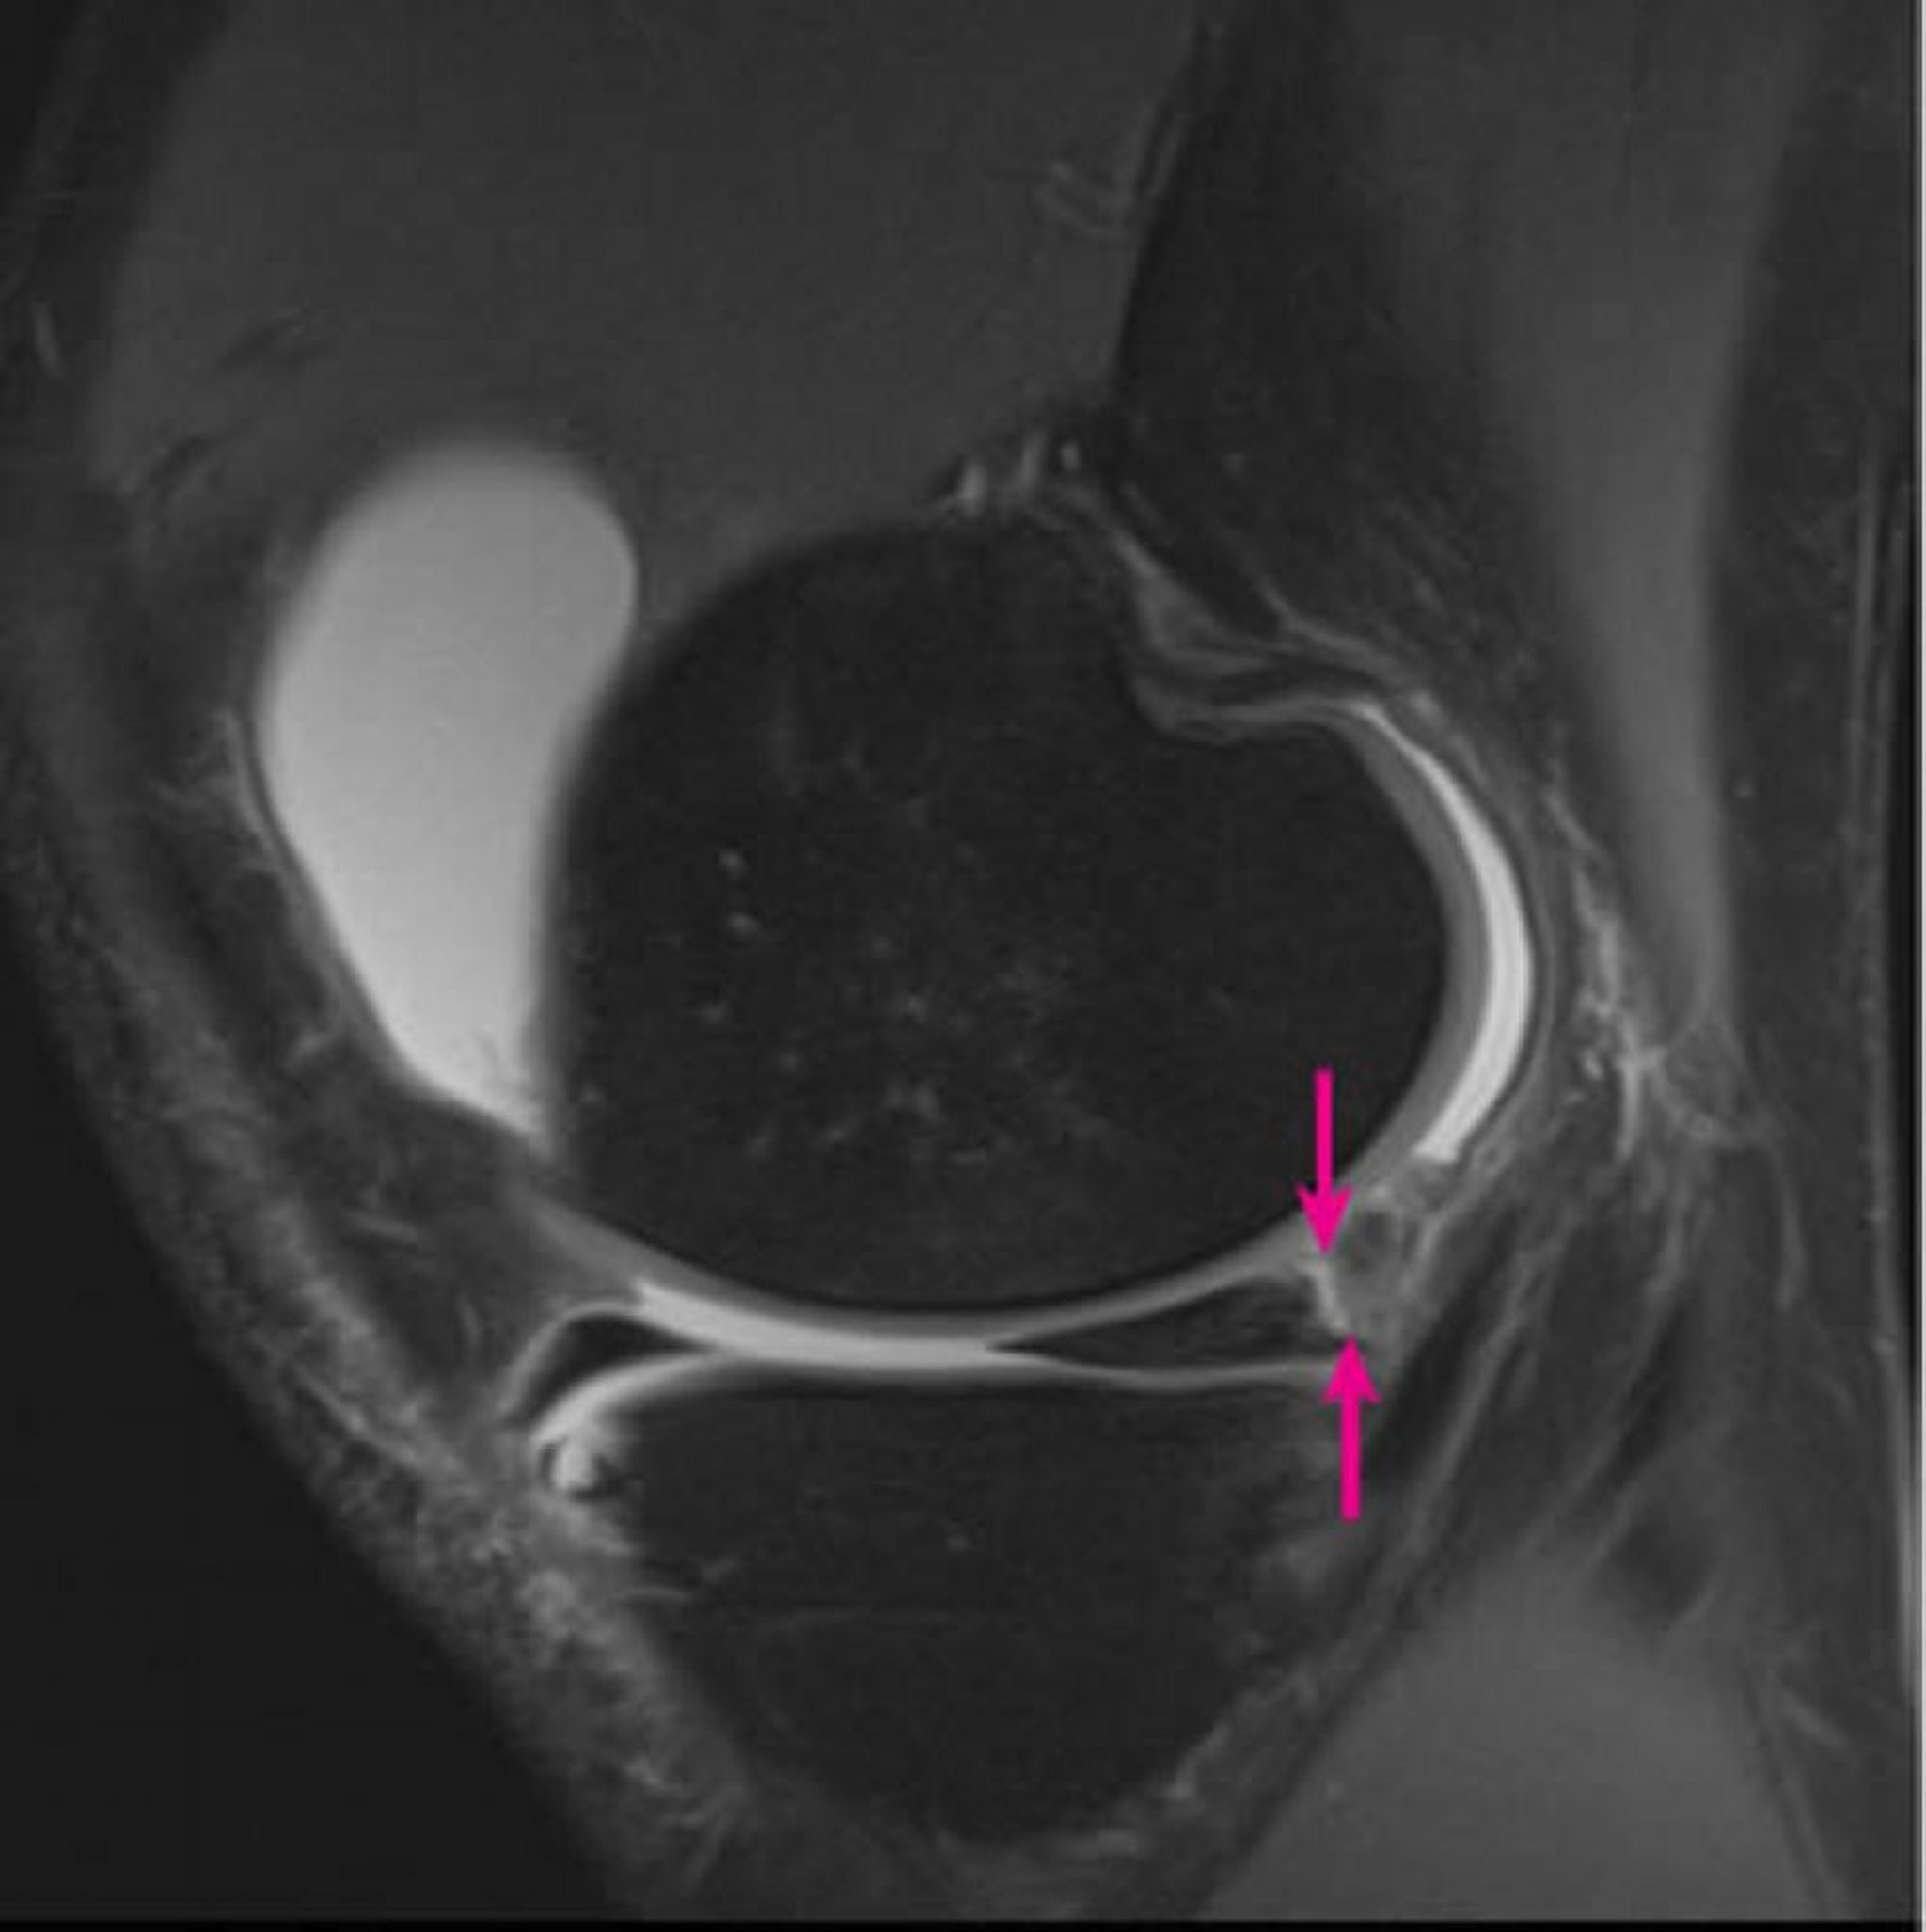 MRI of the Knee